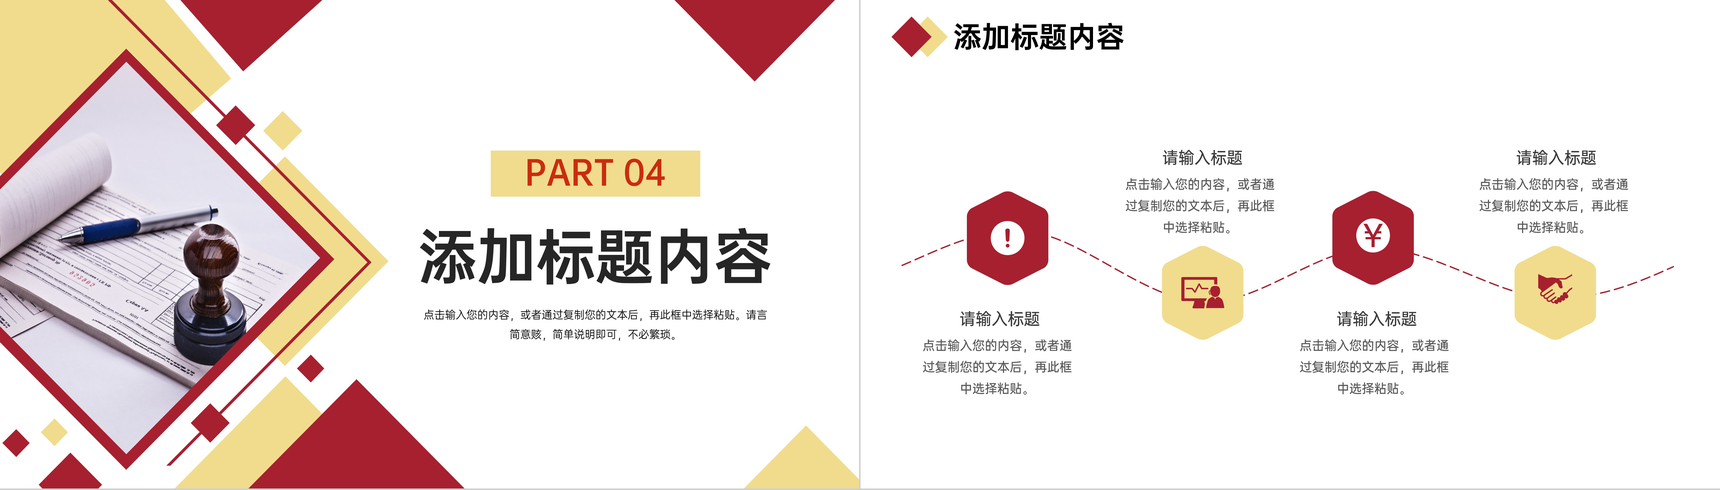 红黄商务风公司年度财务报表审计报告PPT模板-9